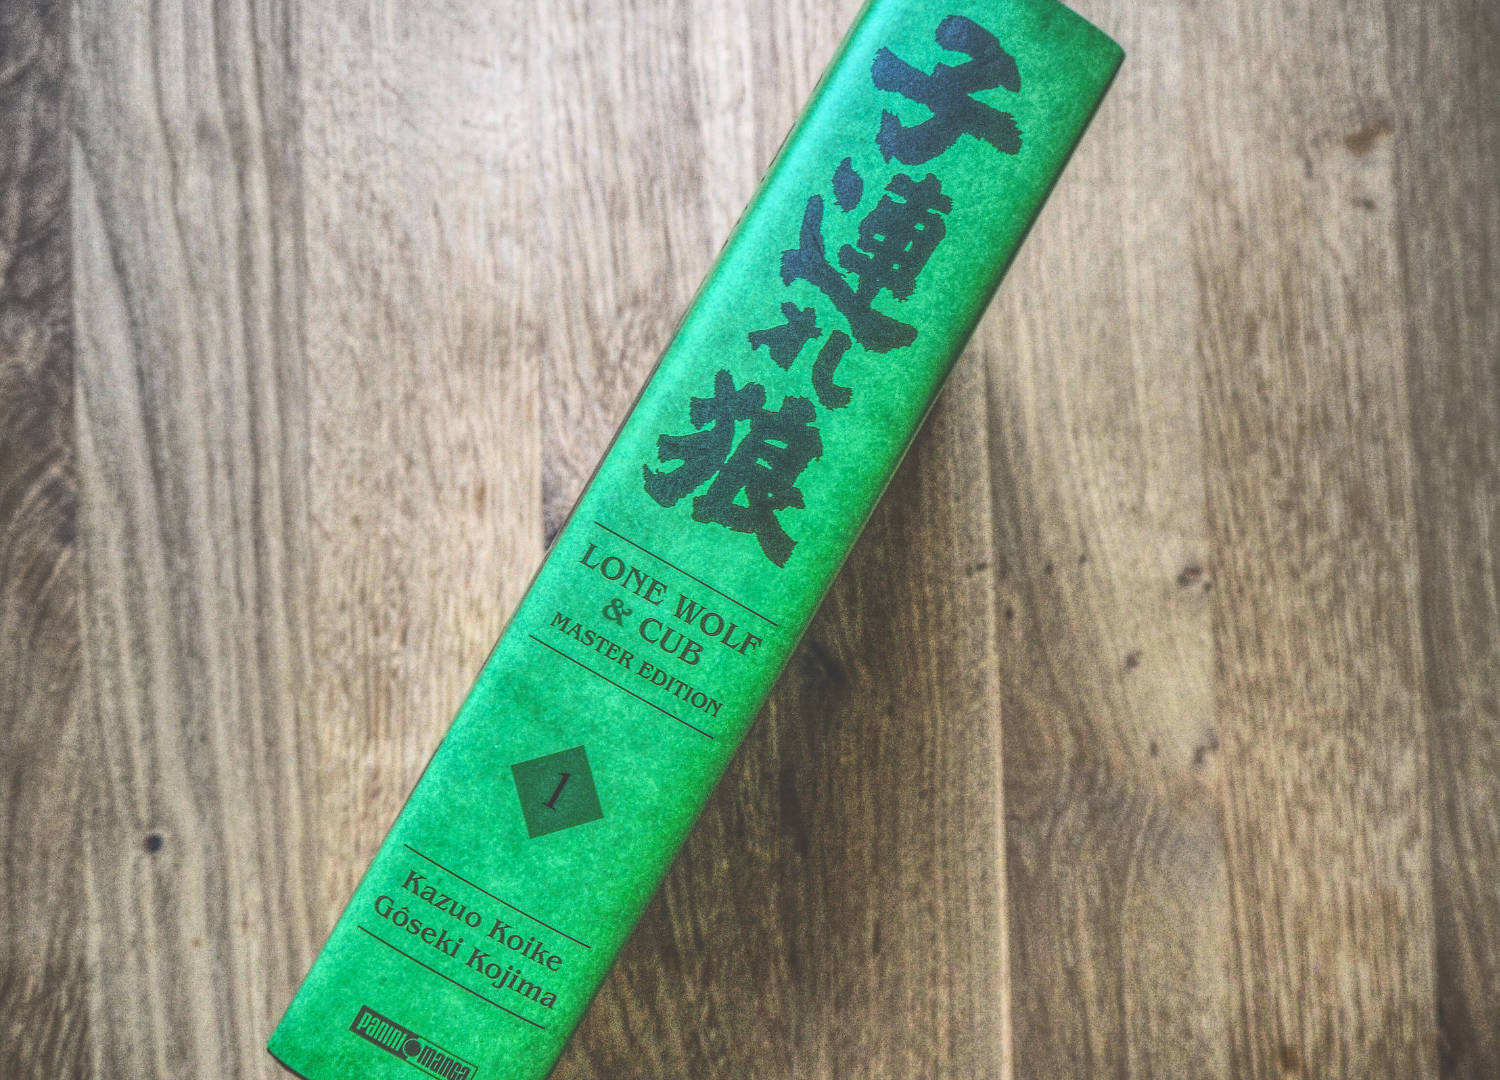 Ein grünes Buch mit japanischer Schrift darauf.